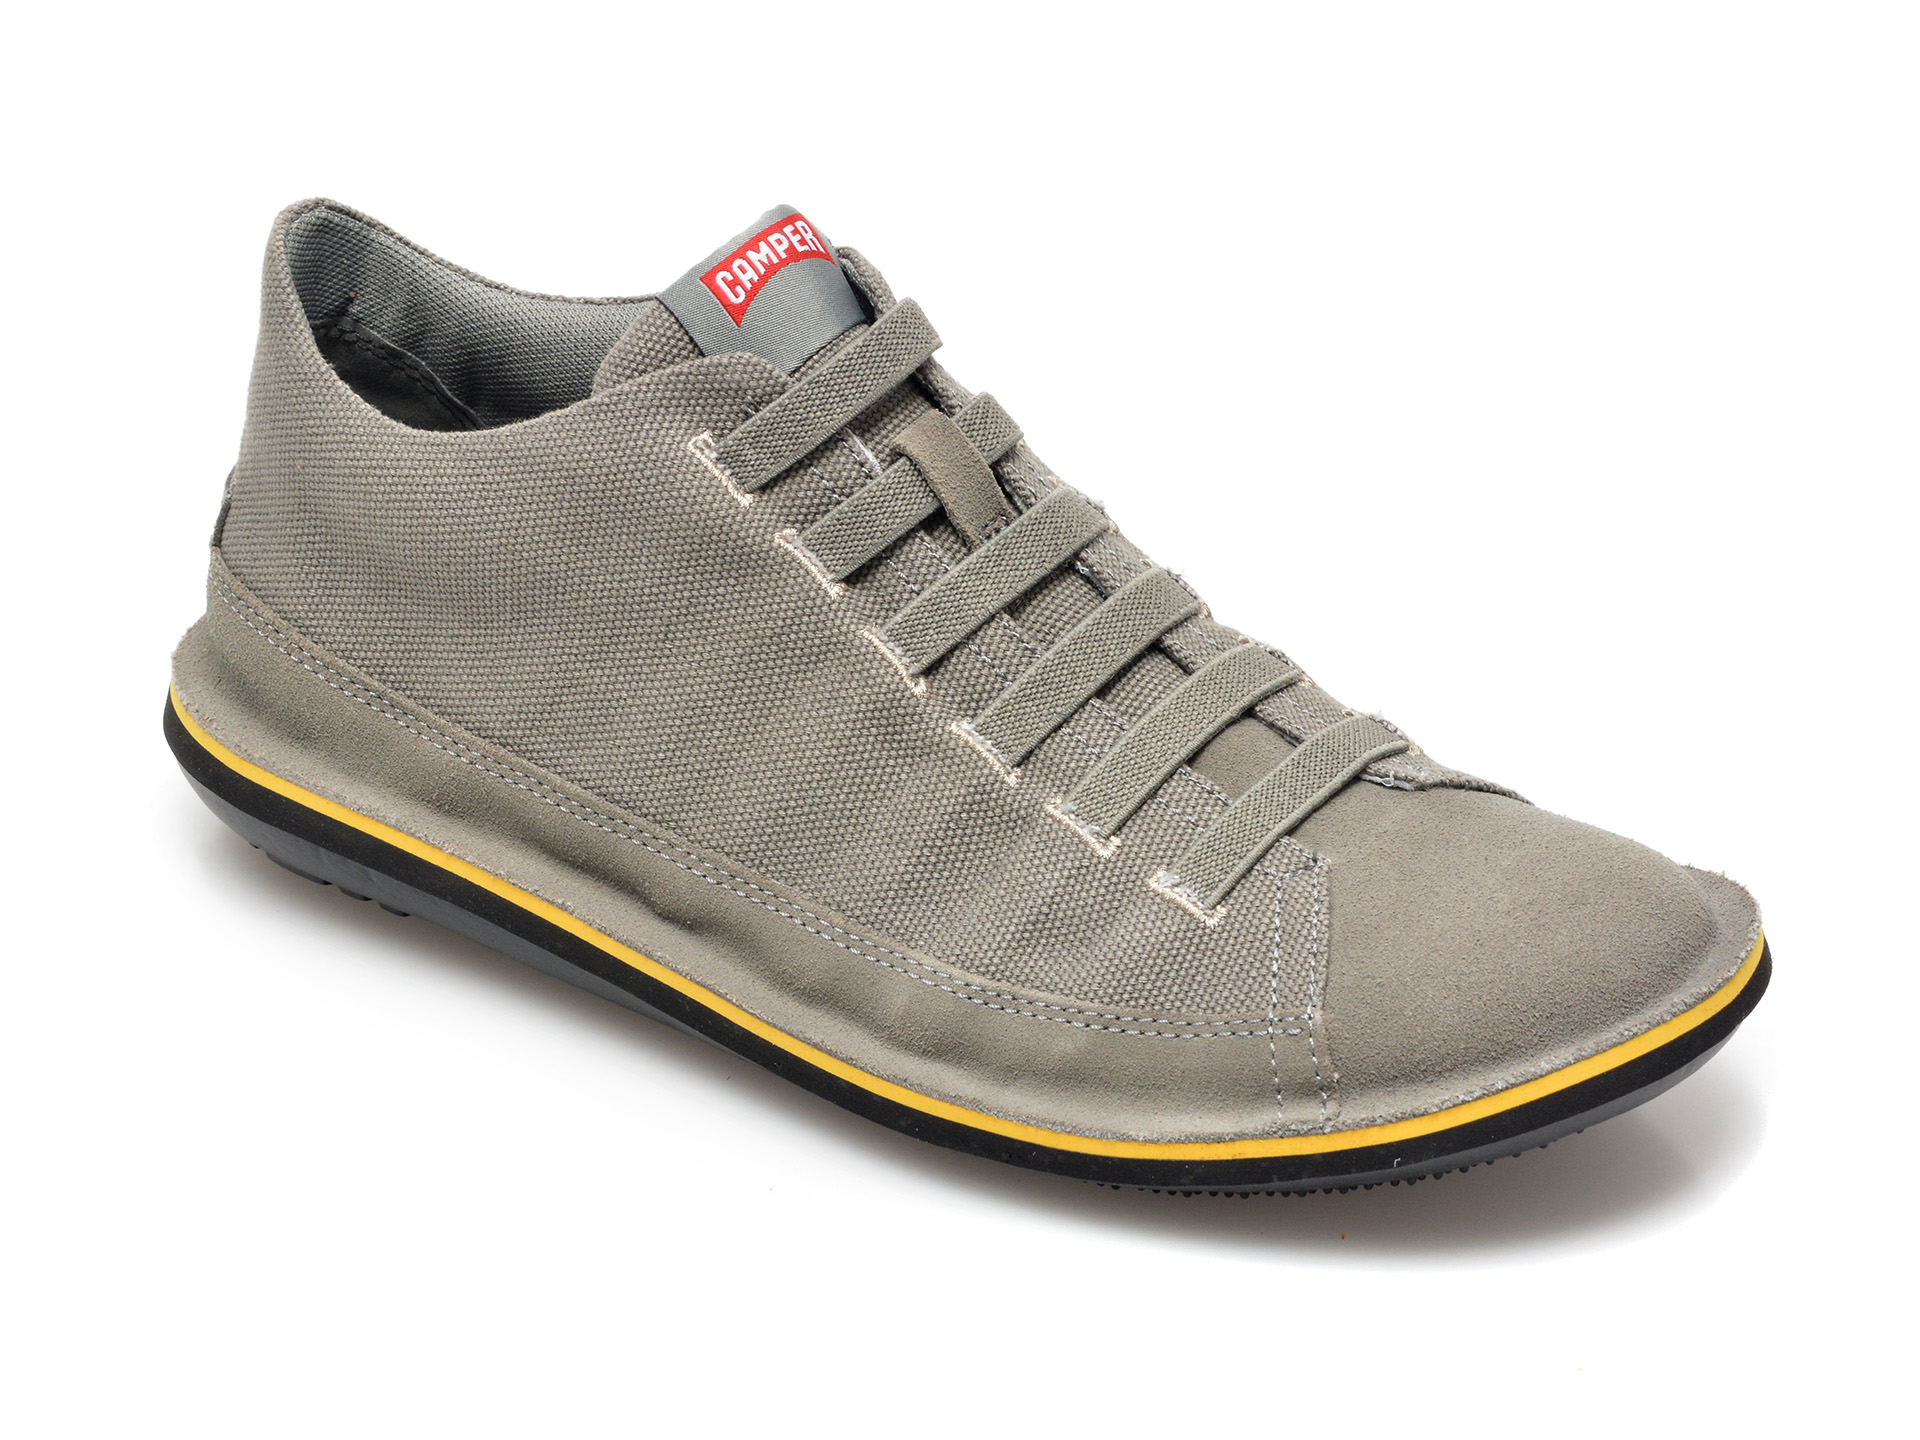 Pantofi CAMPER gri, 36791, din material textil si piele naturala Camper